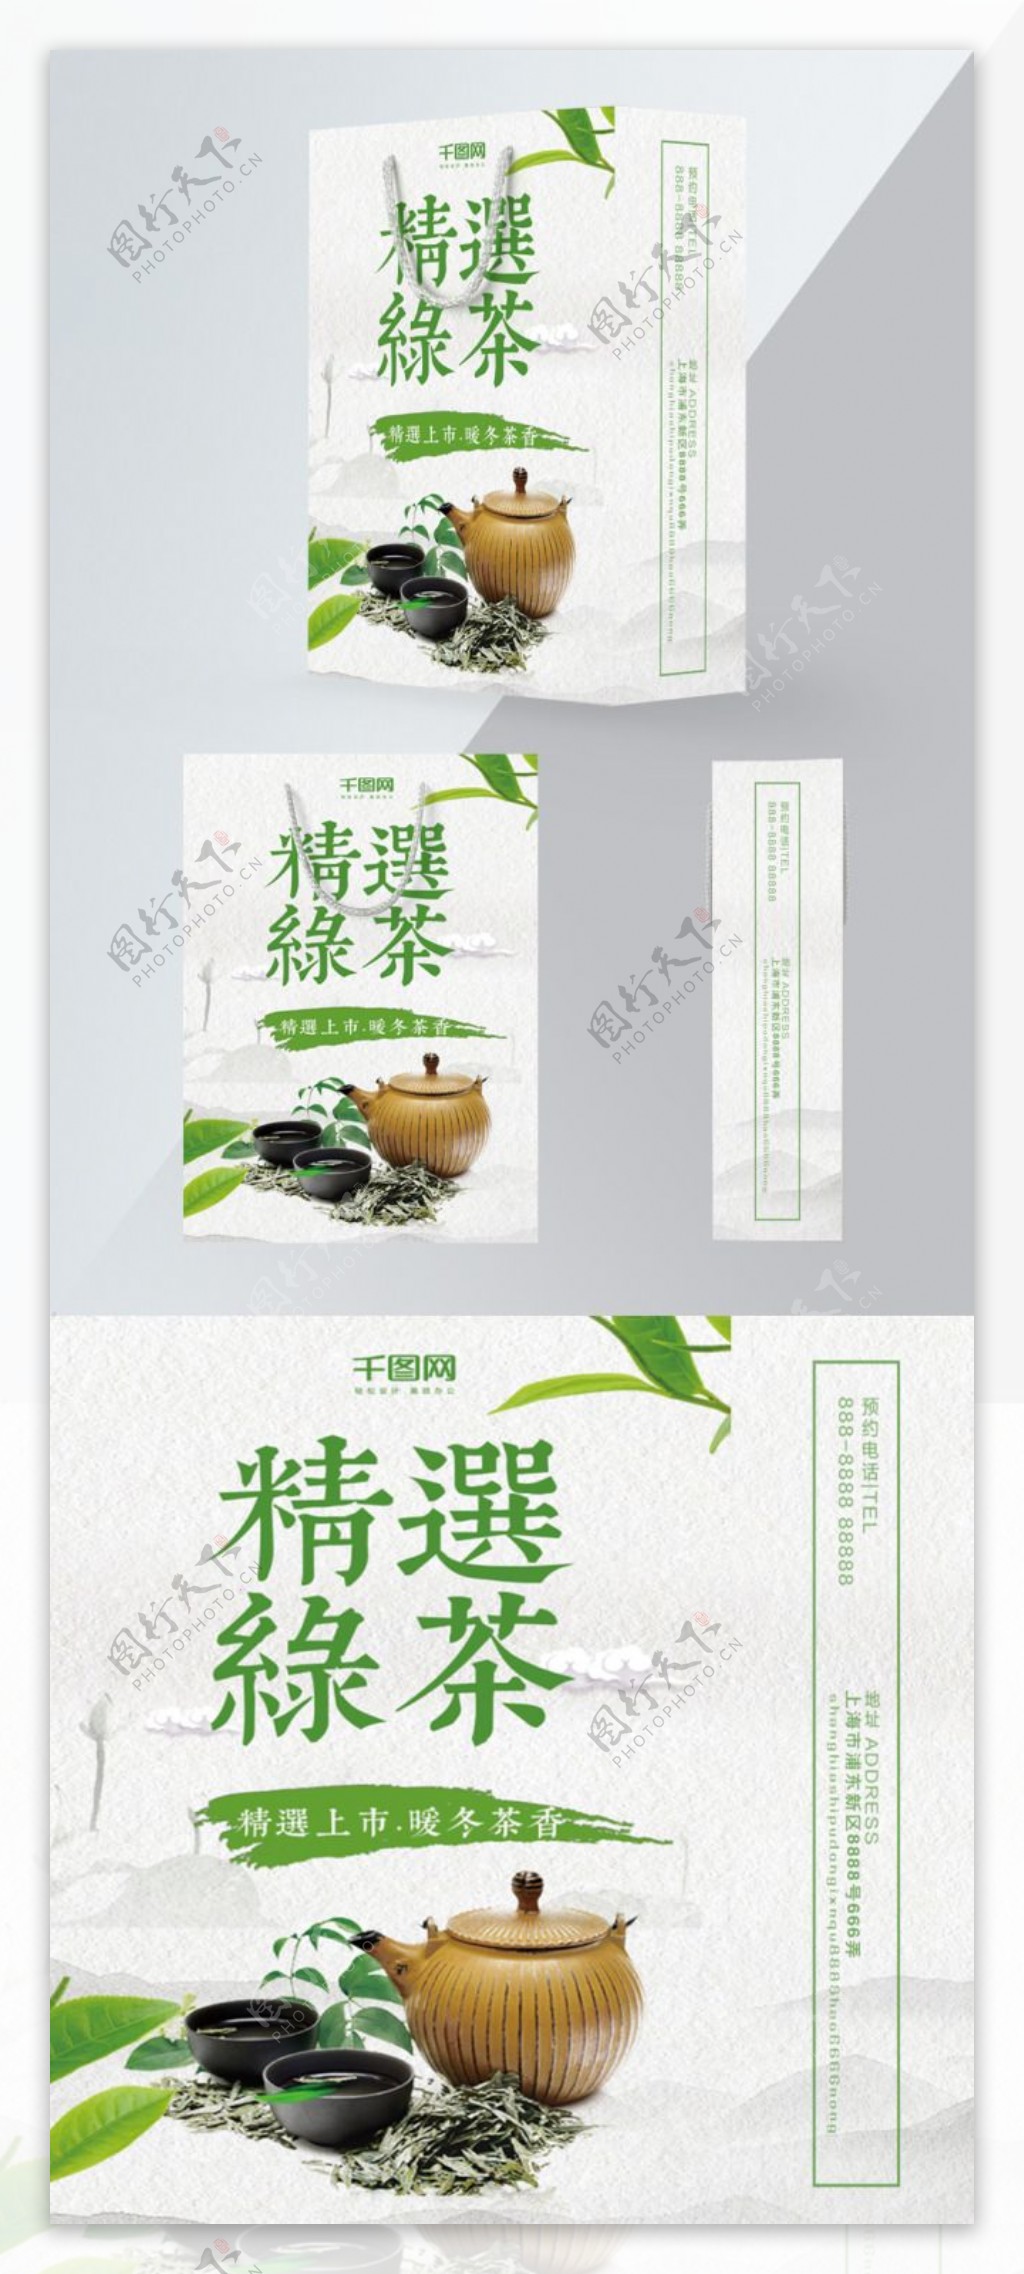 精品设计简约中国风绿茶包装设计